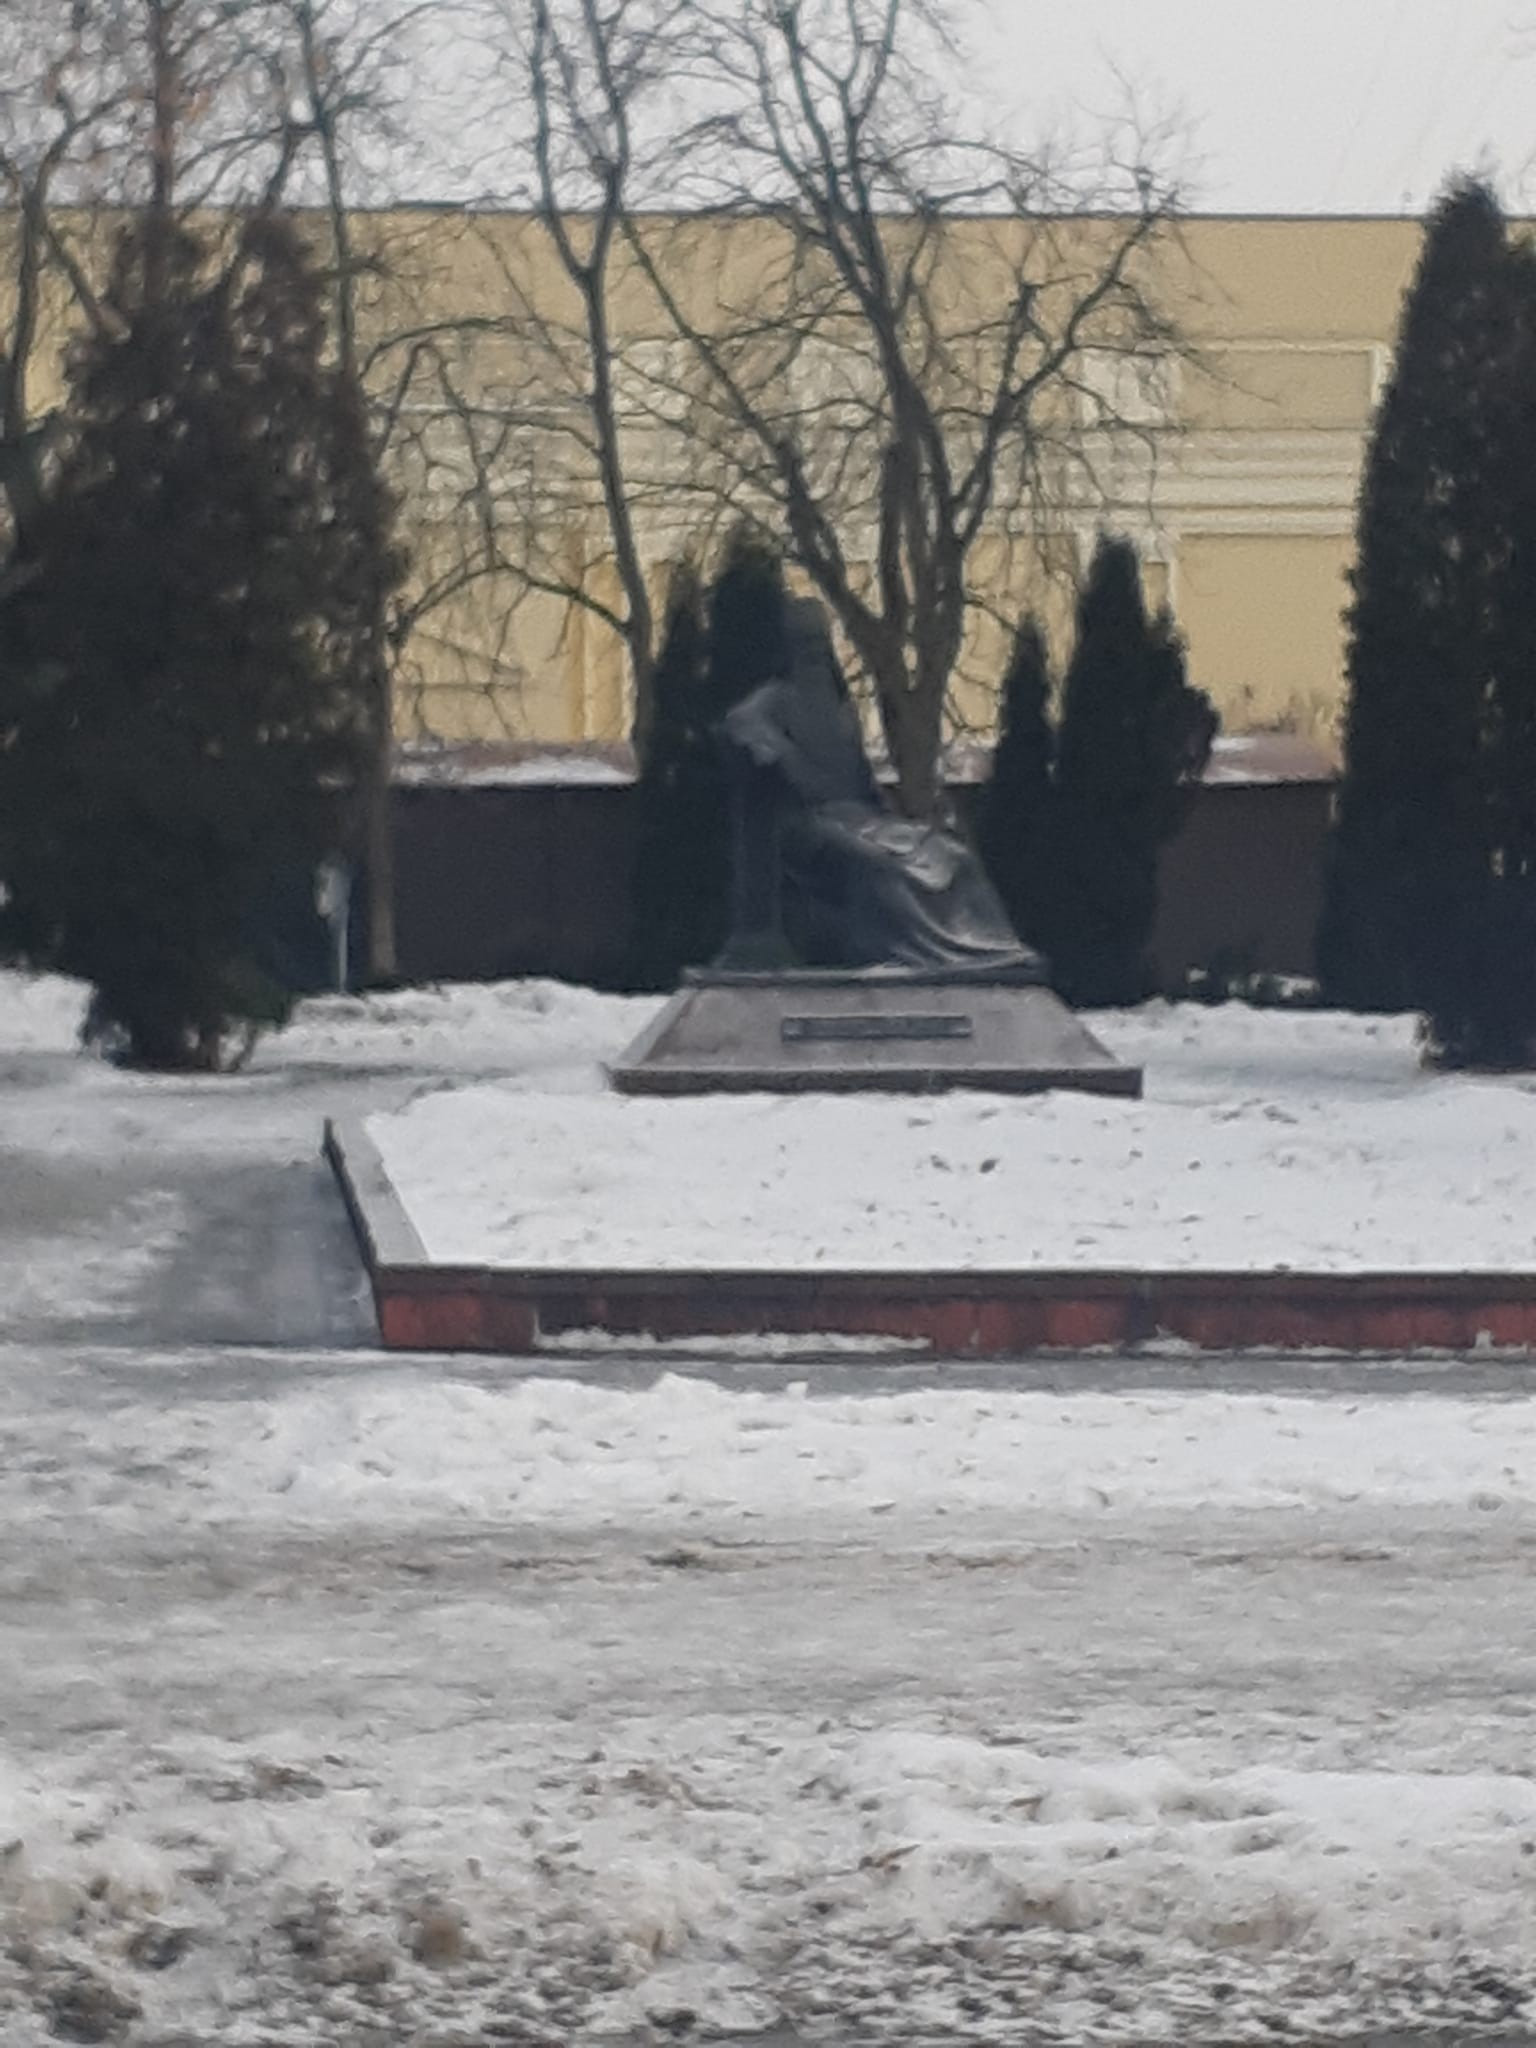 Памятник Симеону Полоцкому